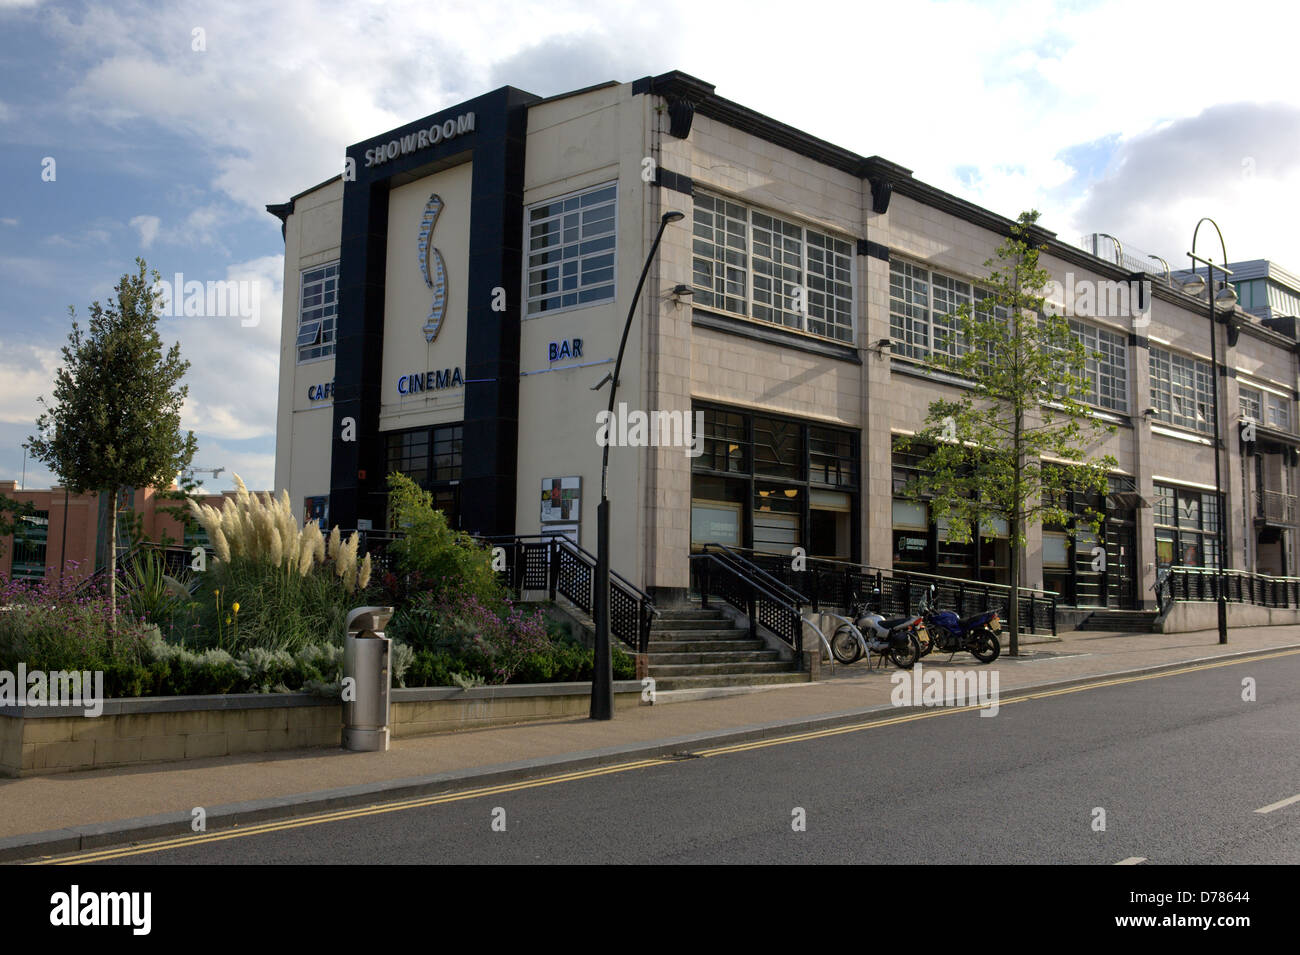 Das Showroom-Kino ist eine unabhängige Arthouse-Kino in Sheffield, England. Es befindet sich in einem Art Deco-Gebäude von 1936 Stockfoto